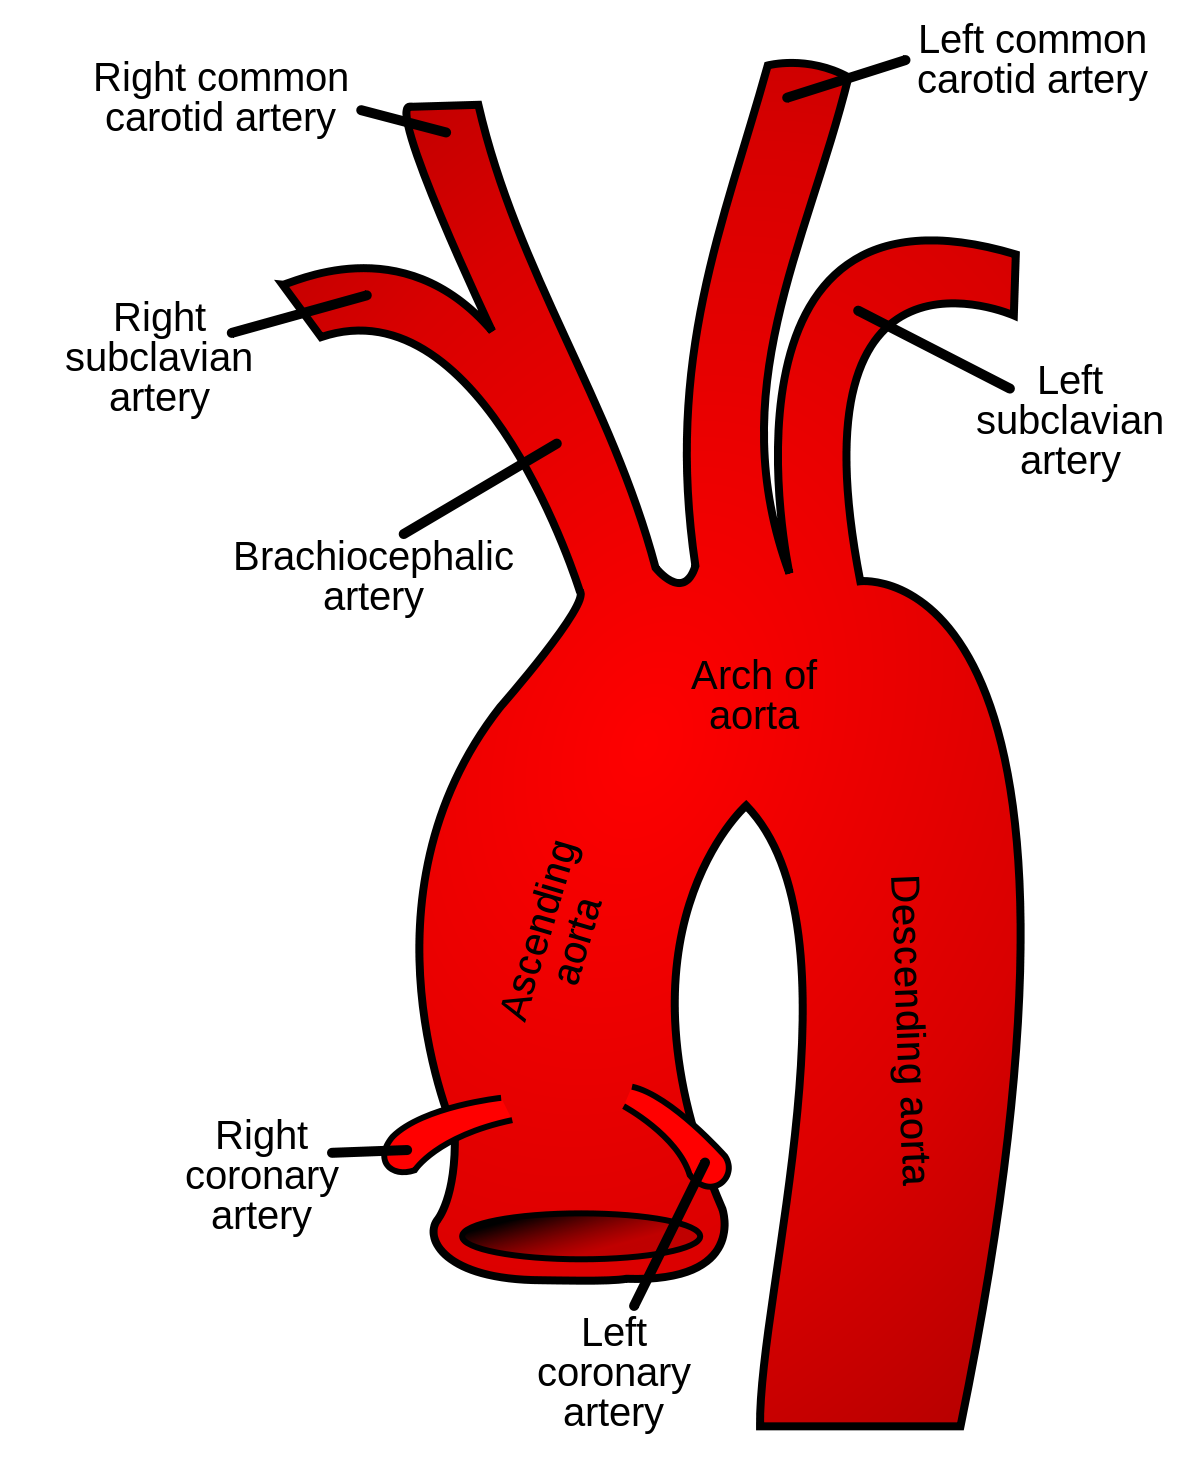 Descending aorta - Wikipedia